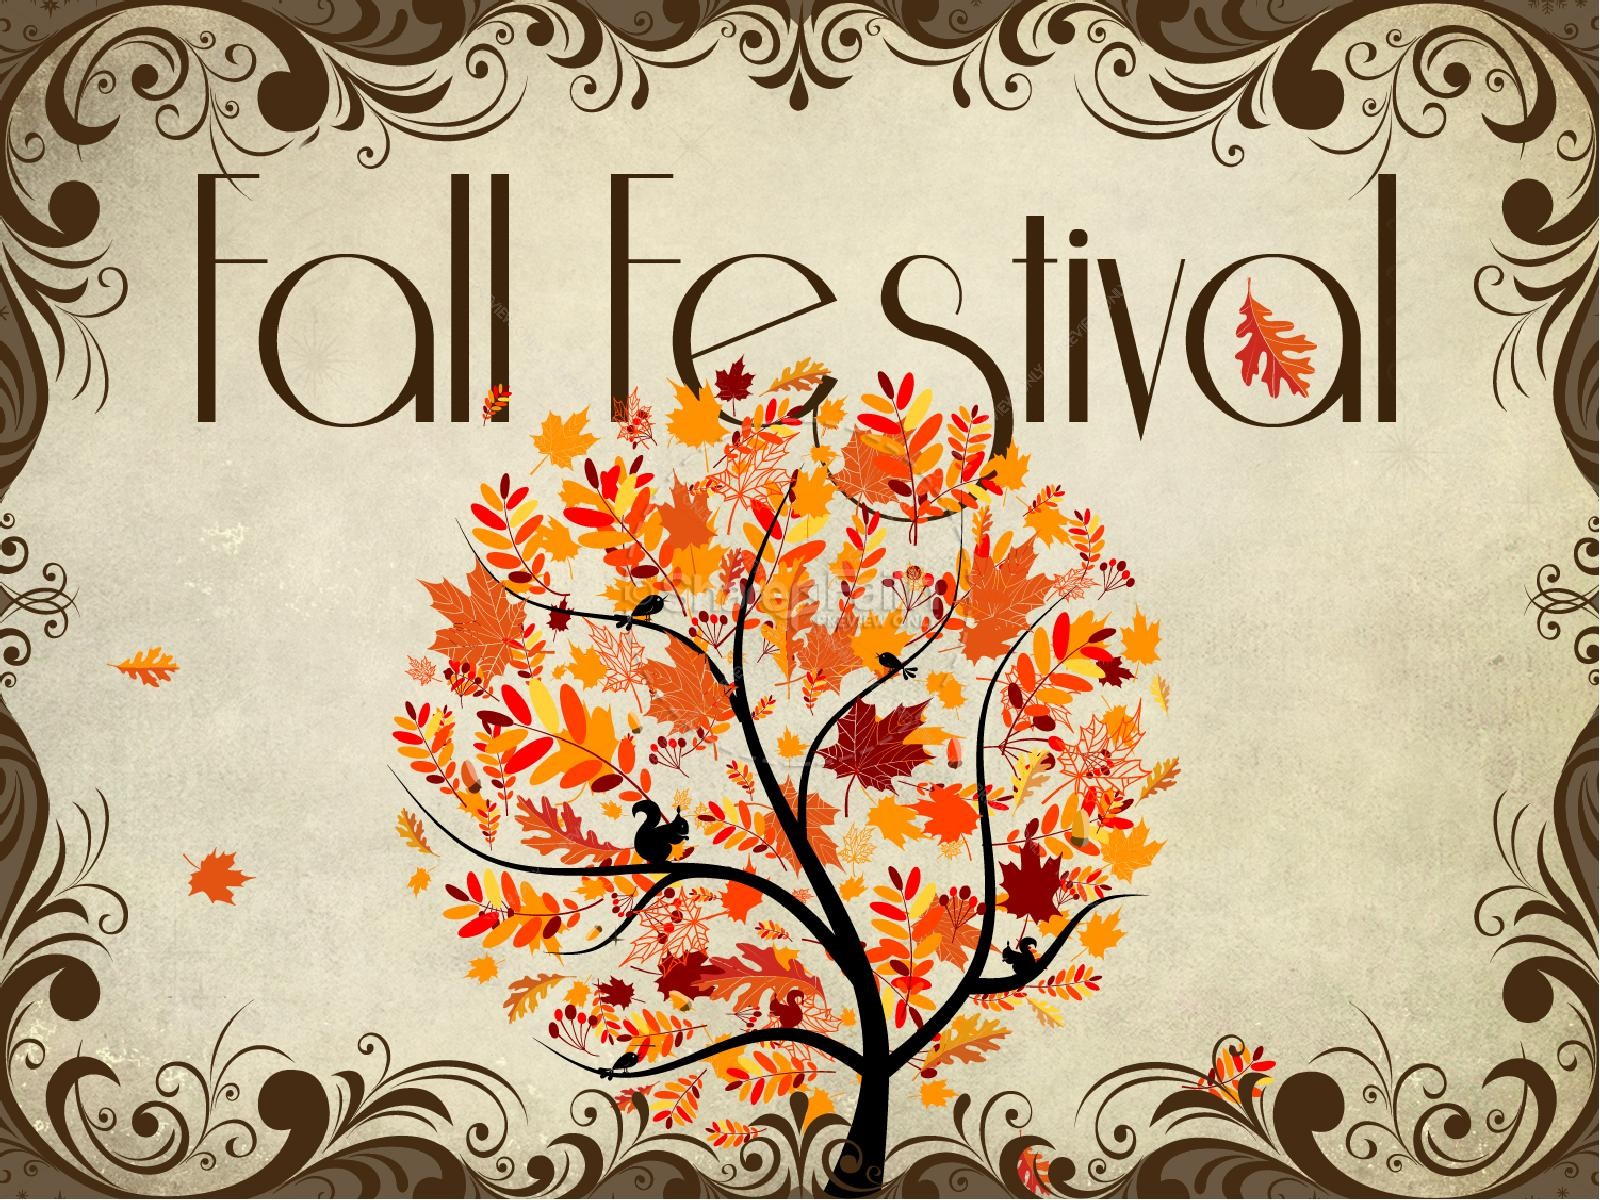 Fall Festival PowerPoint Slides